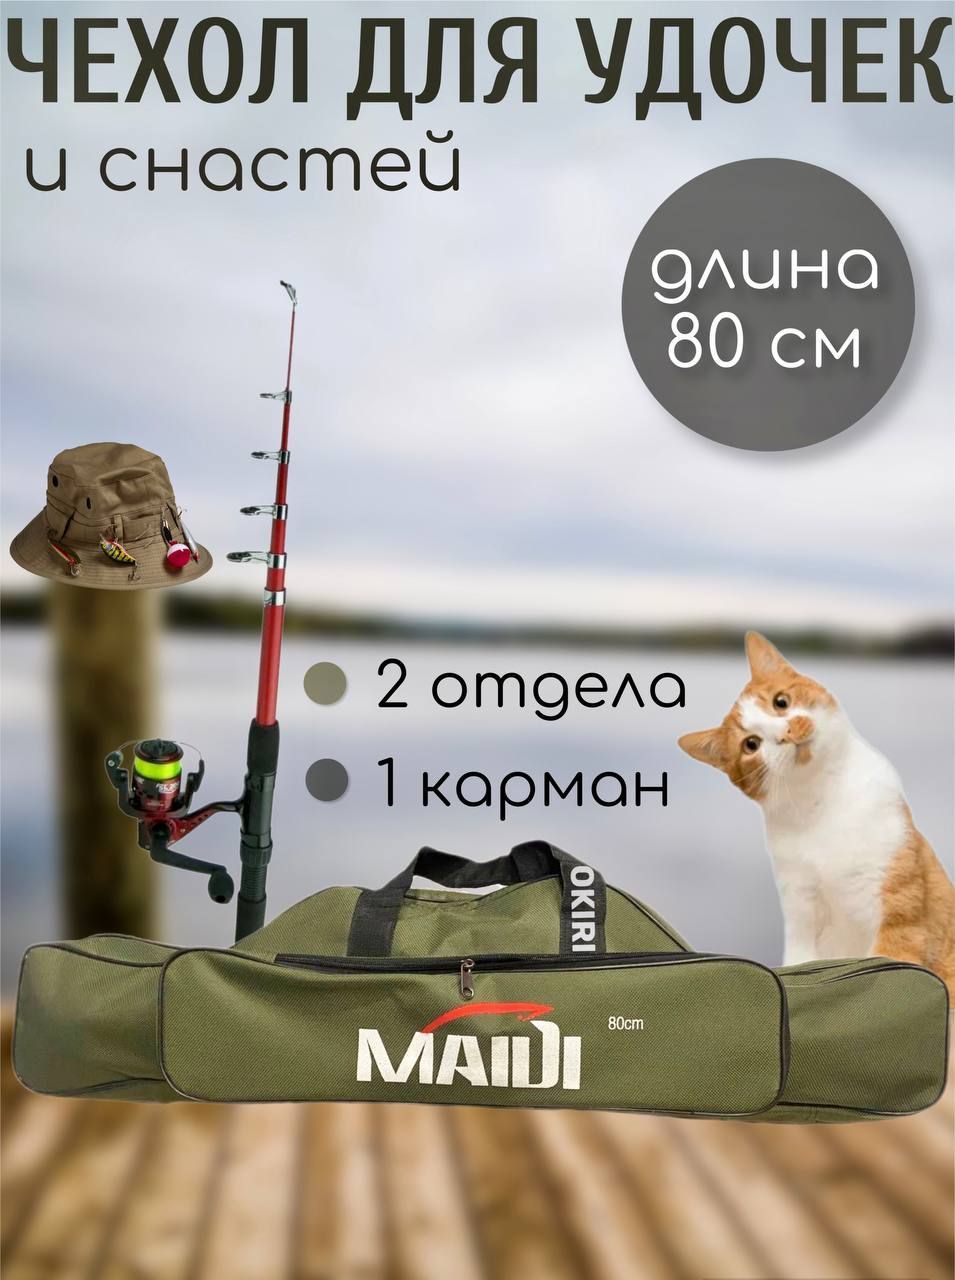 Сумка Для Удочек, Carrying Case Fishing Rods